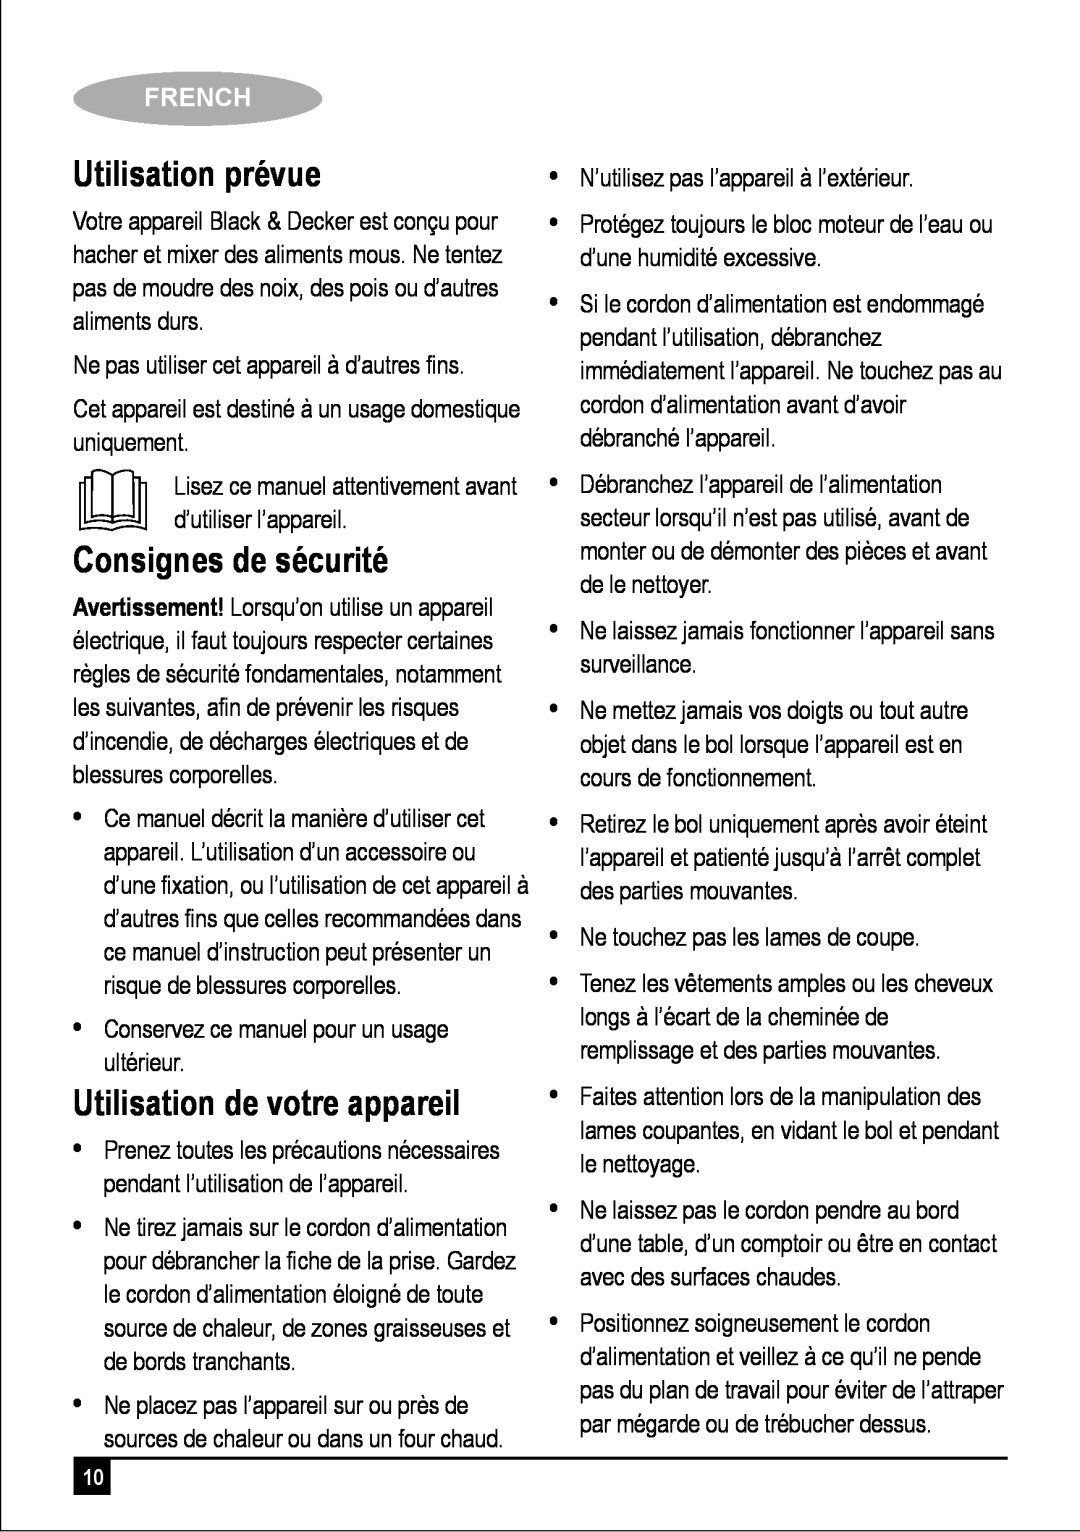 Black & Decker FC300 manual Utilisation prévue, Consignes de sécurité, Utilisation de votre appareil, French 